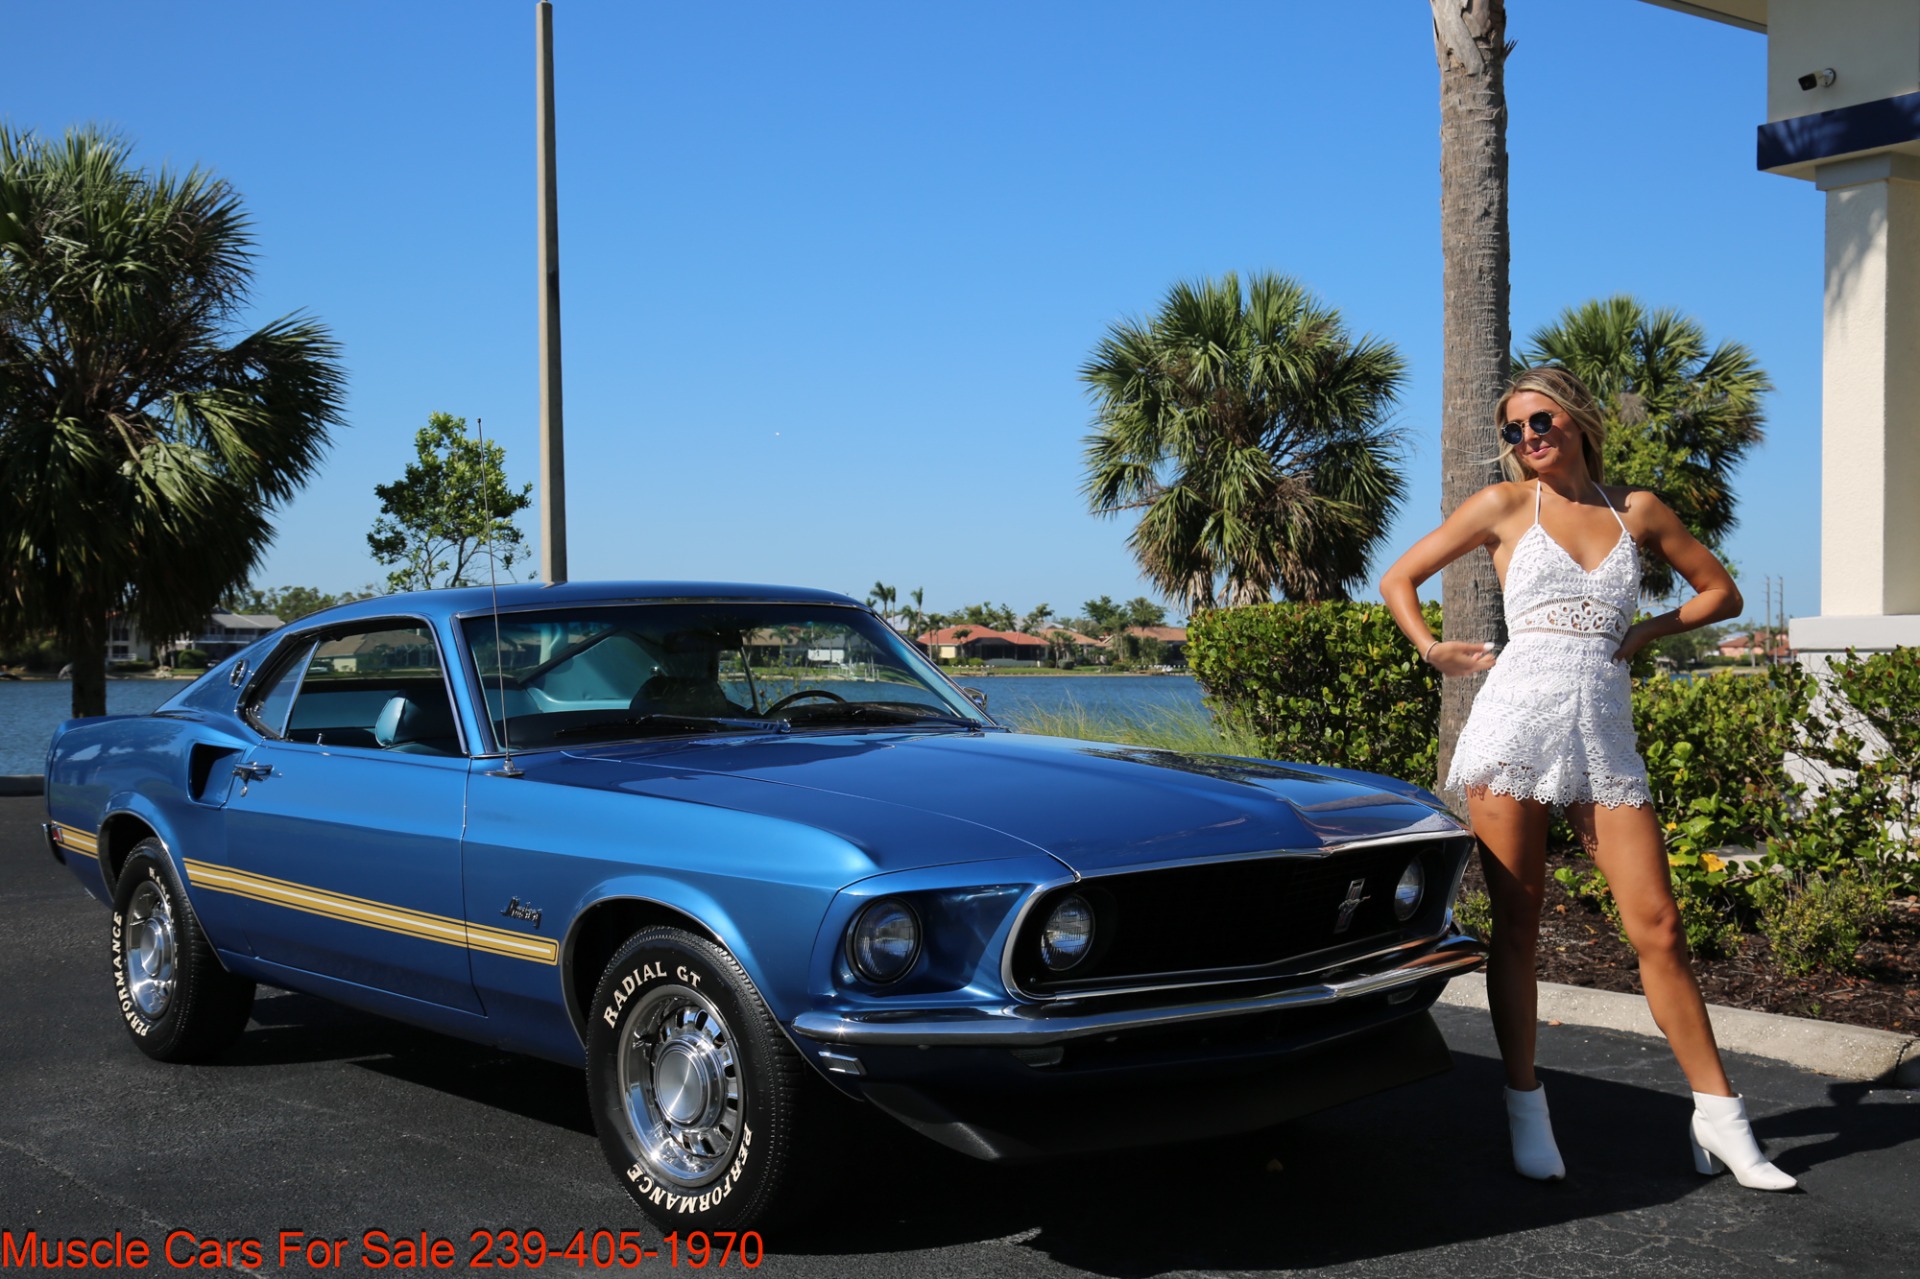 Used-1969-Ford-Mustang-V8-Fastback.jpg